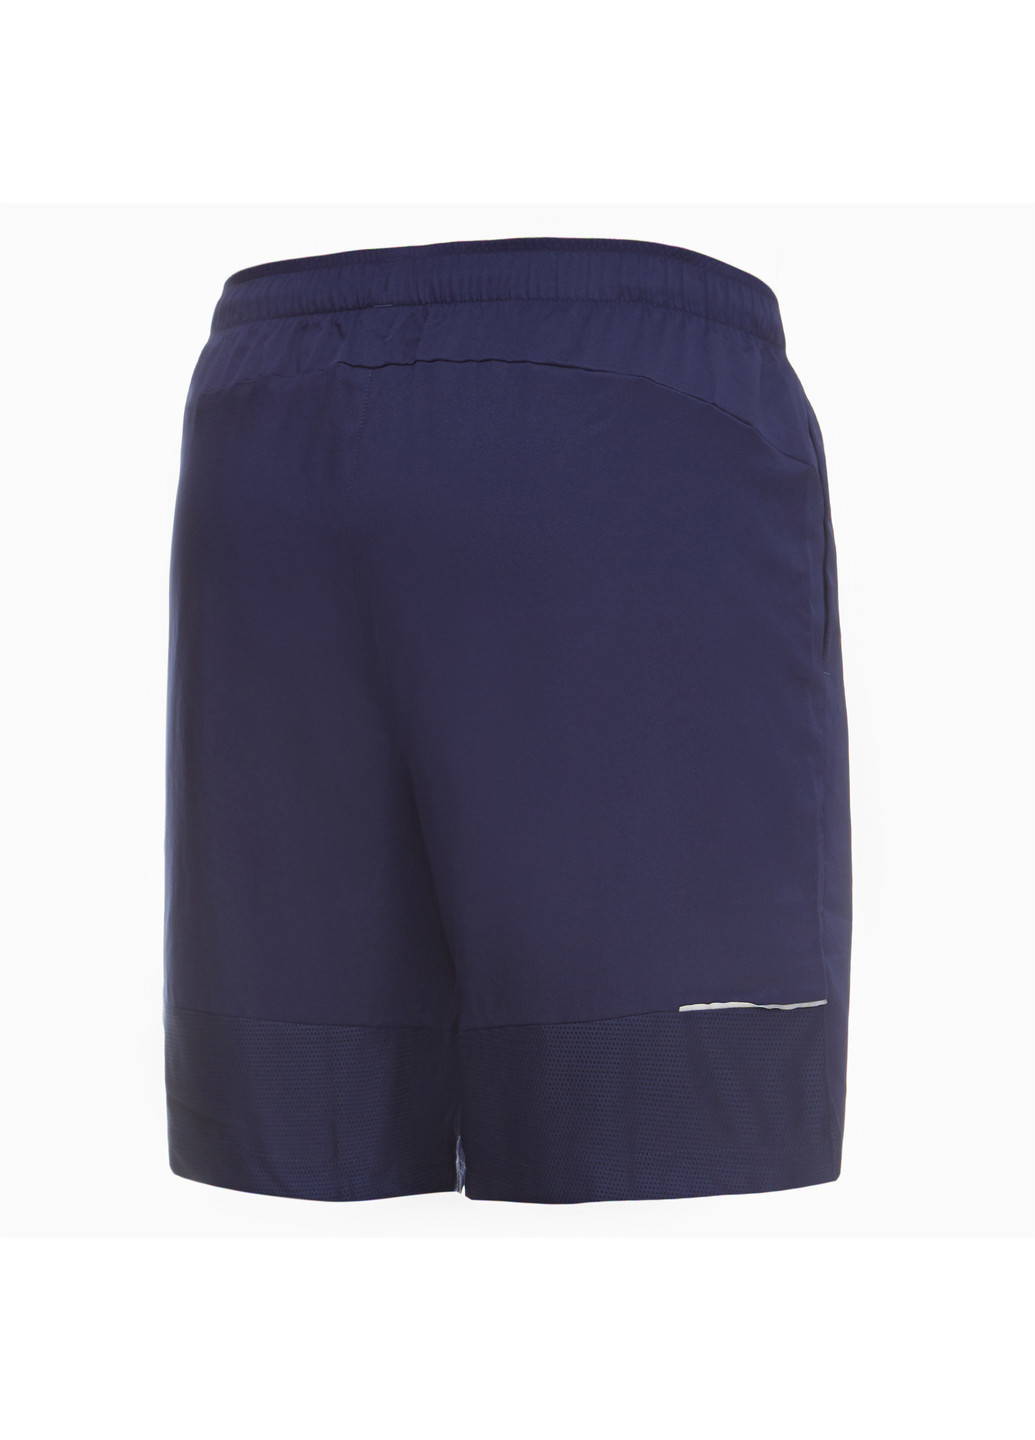 Шорты Active 8 inch Shorts Poly M Puma однотонные синие спортивные полиэстер, эластан